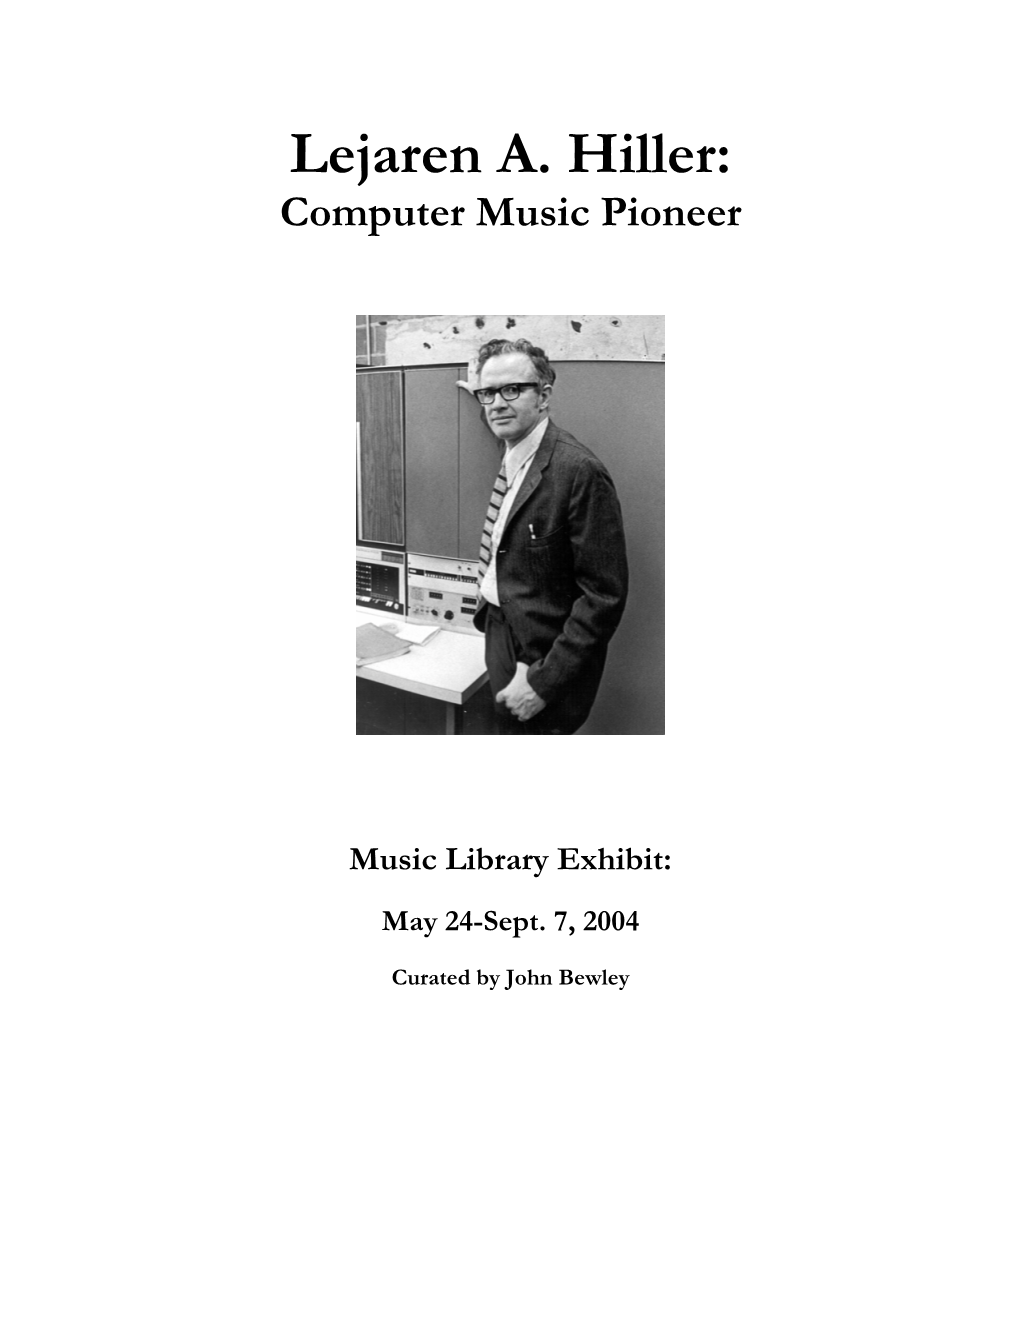 Lejaren A. Hiller : Computer Music Pioneer